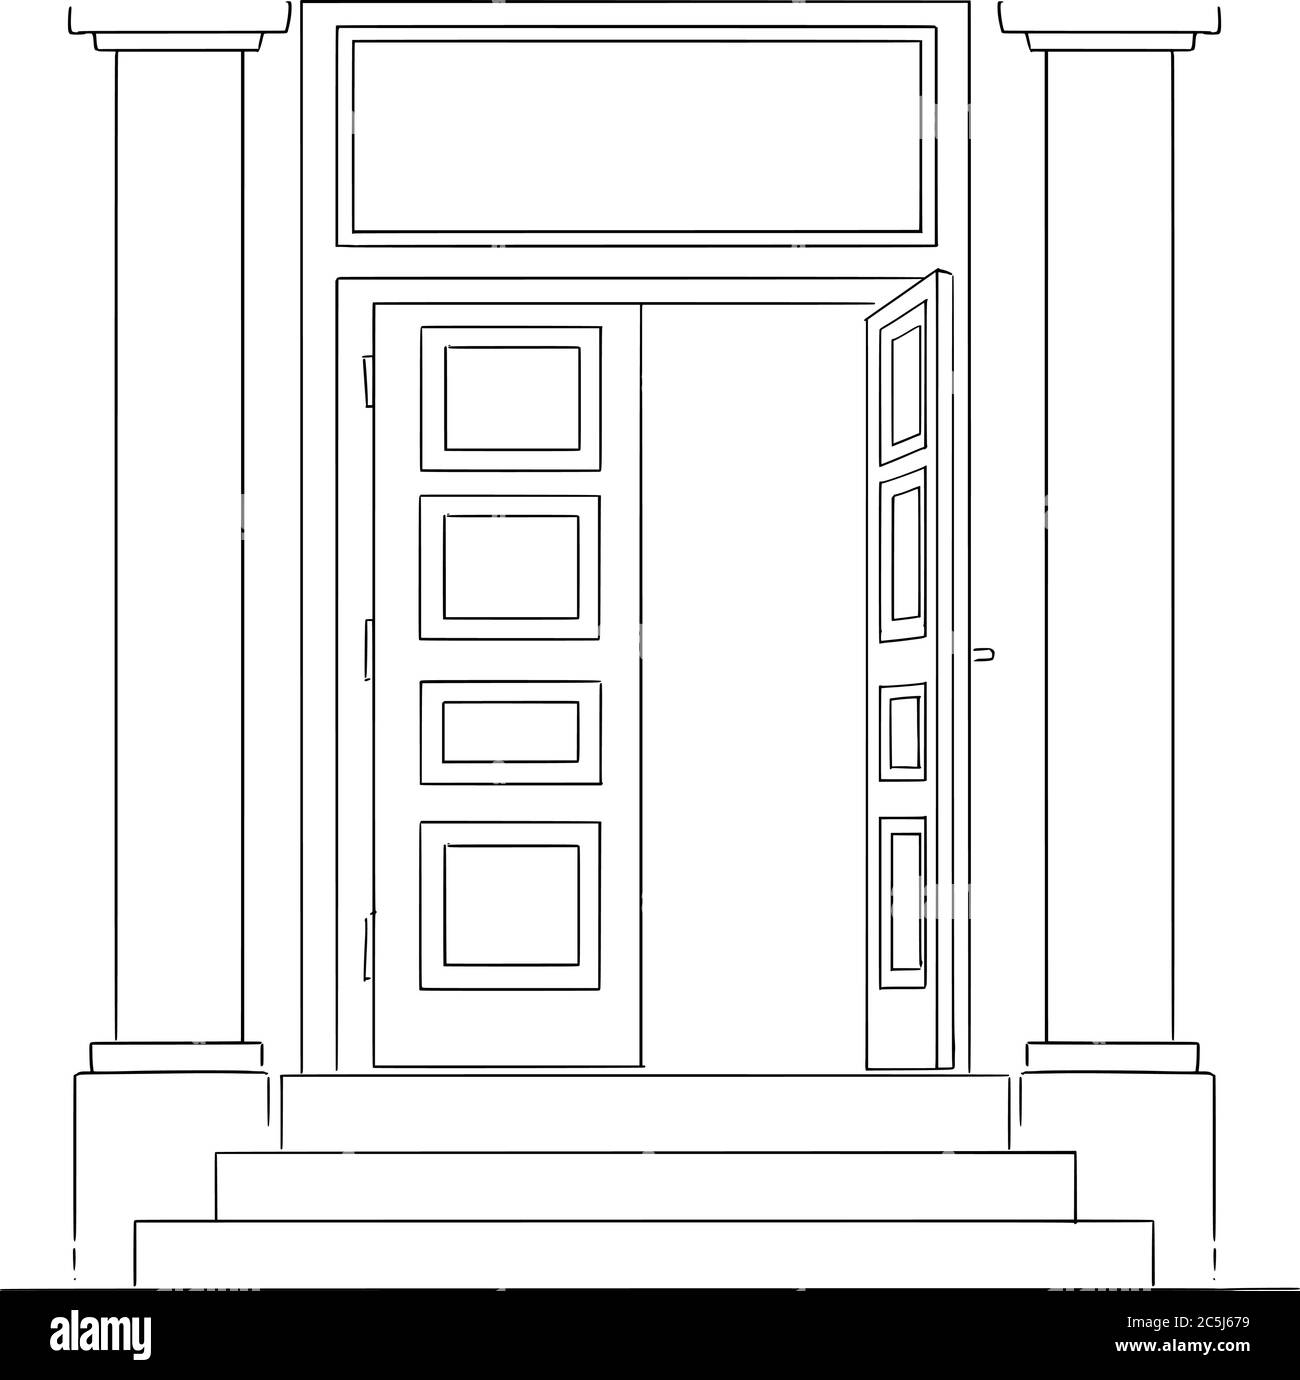 Vektor-Cartoon-Zeichnung konzeptionelle Illustration des klassischen Eingang oder offene Tür des Bankgebäudes mit Säulen und Treppen. Leerer Raum für Text oben. Stock Vektor